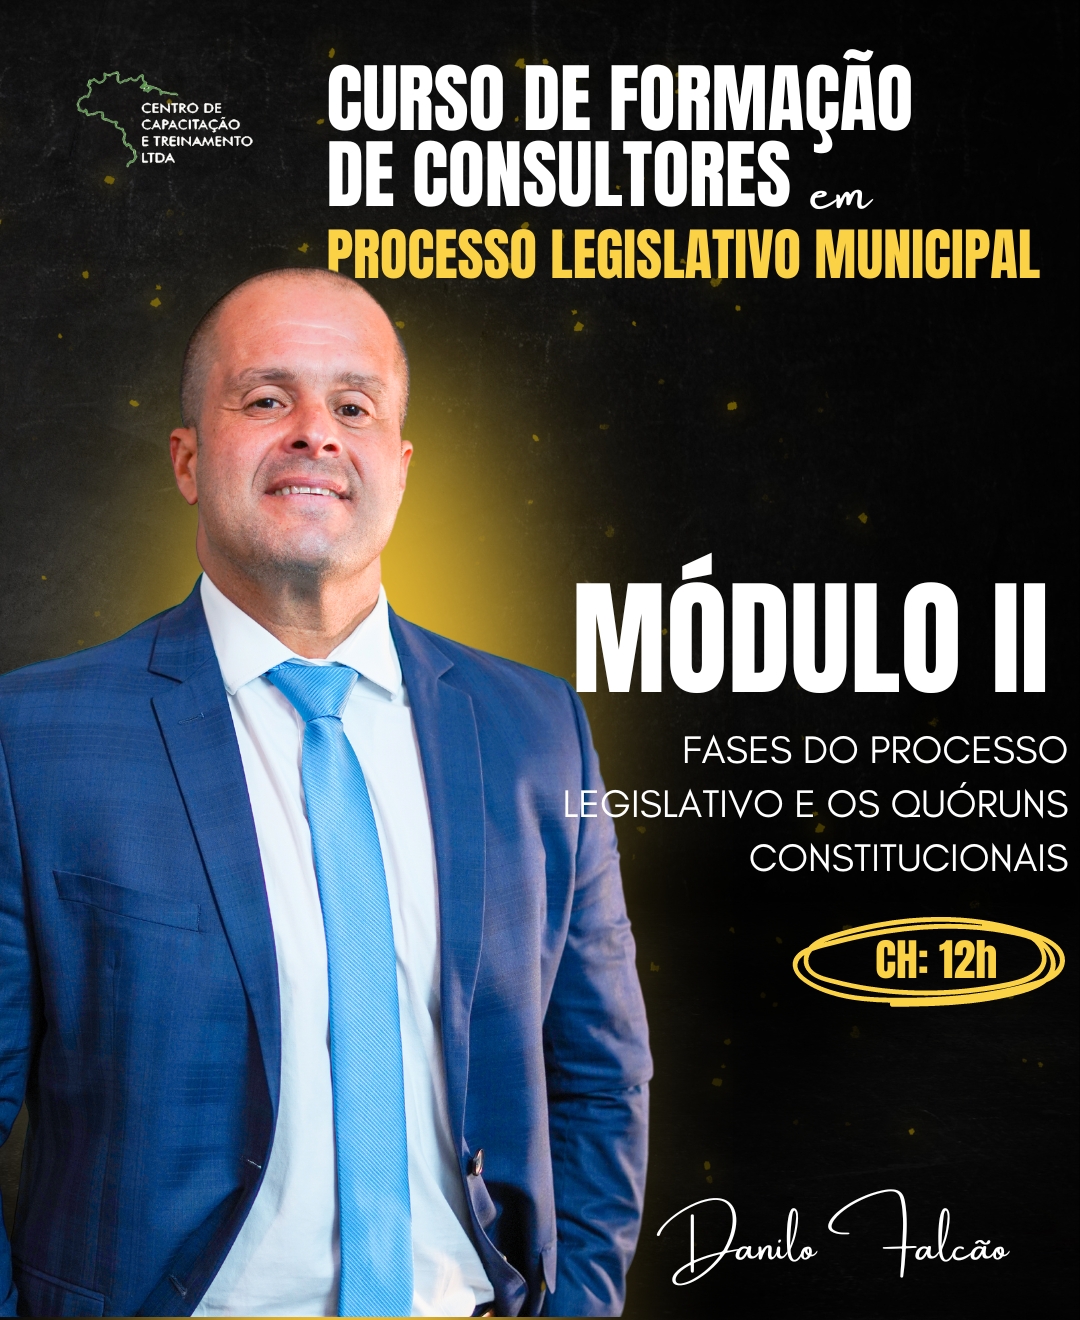 MÓDULO II - Fases do Processo Legislativo e os Quóruns Constitucionais 